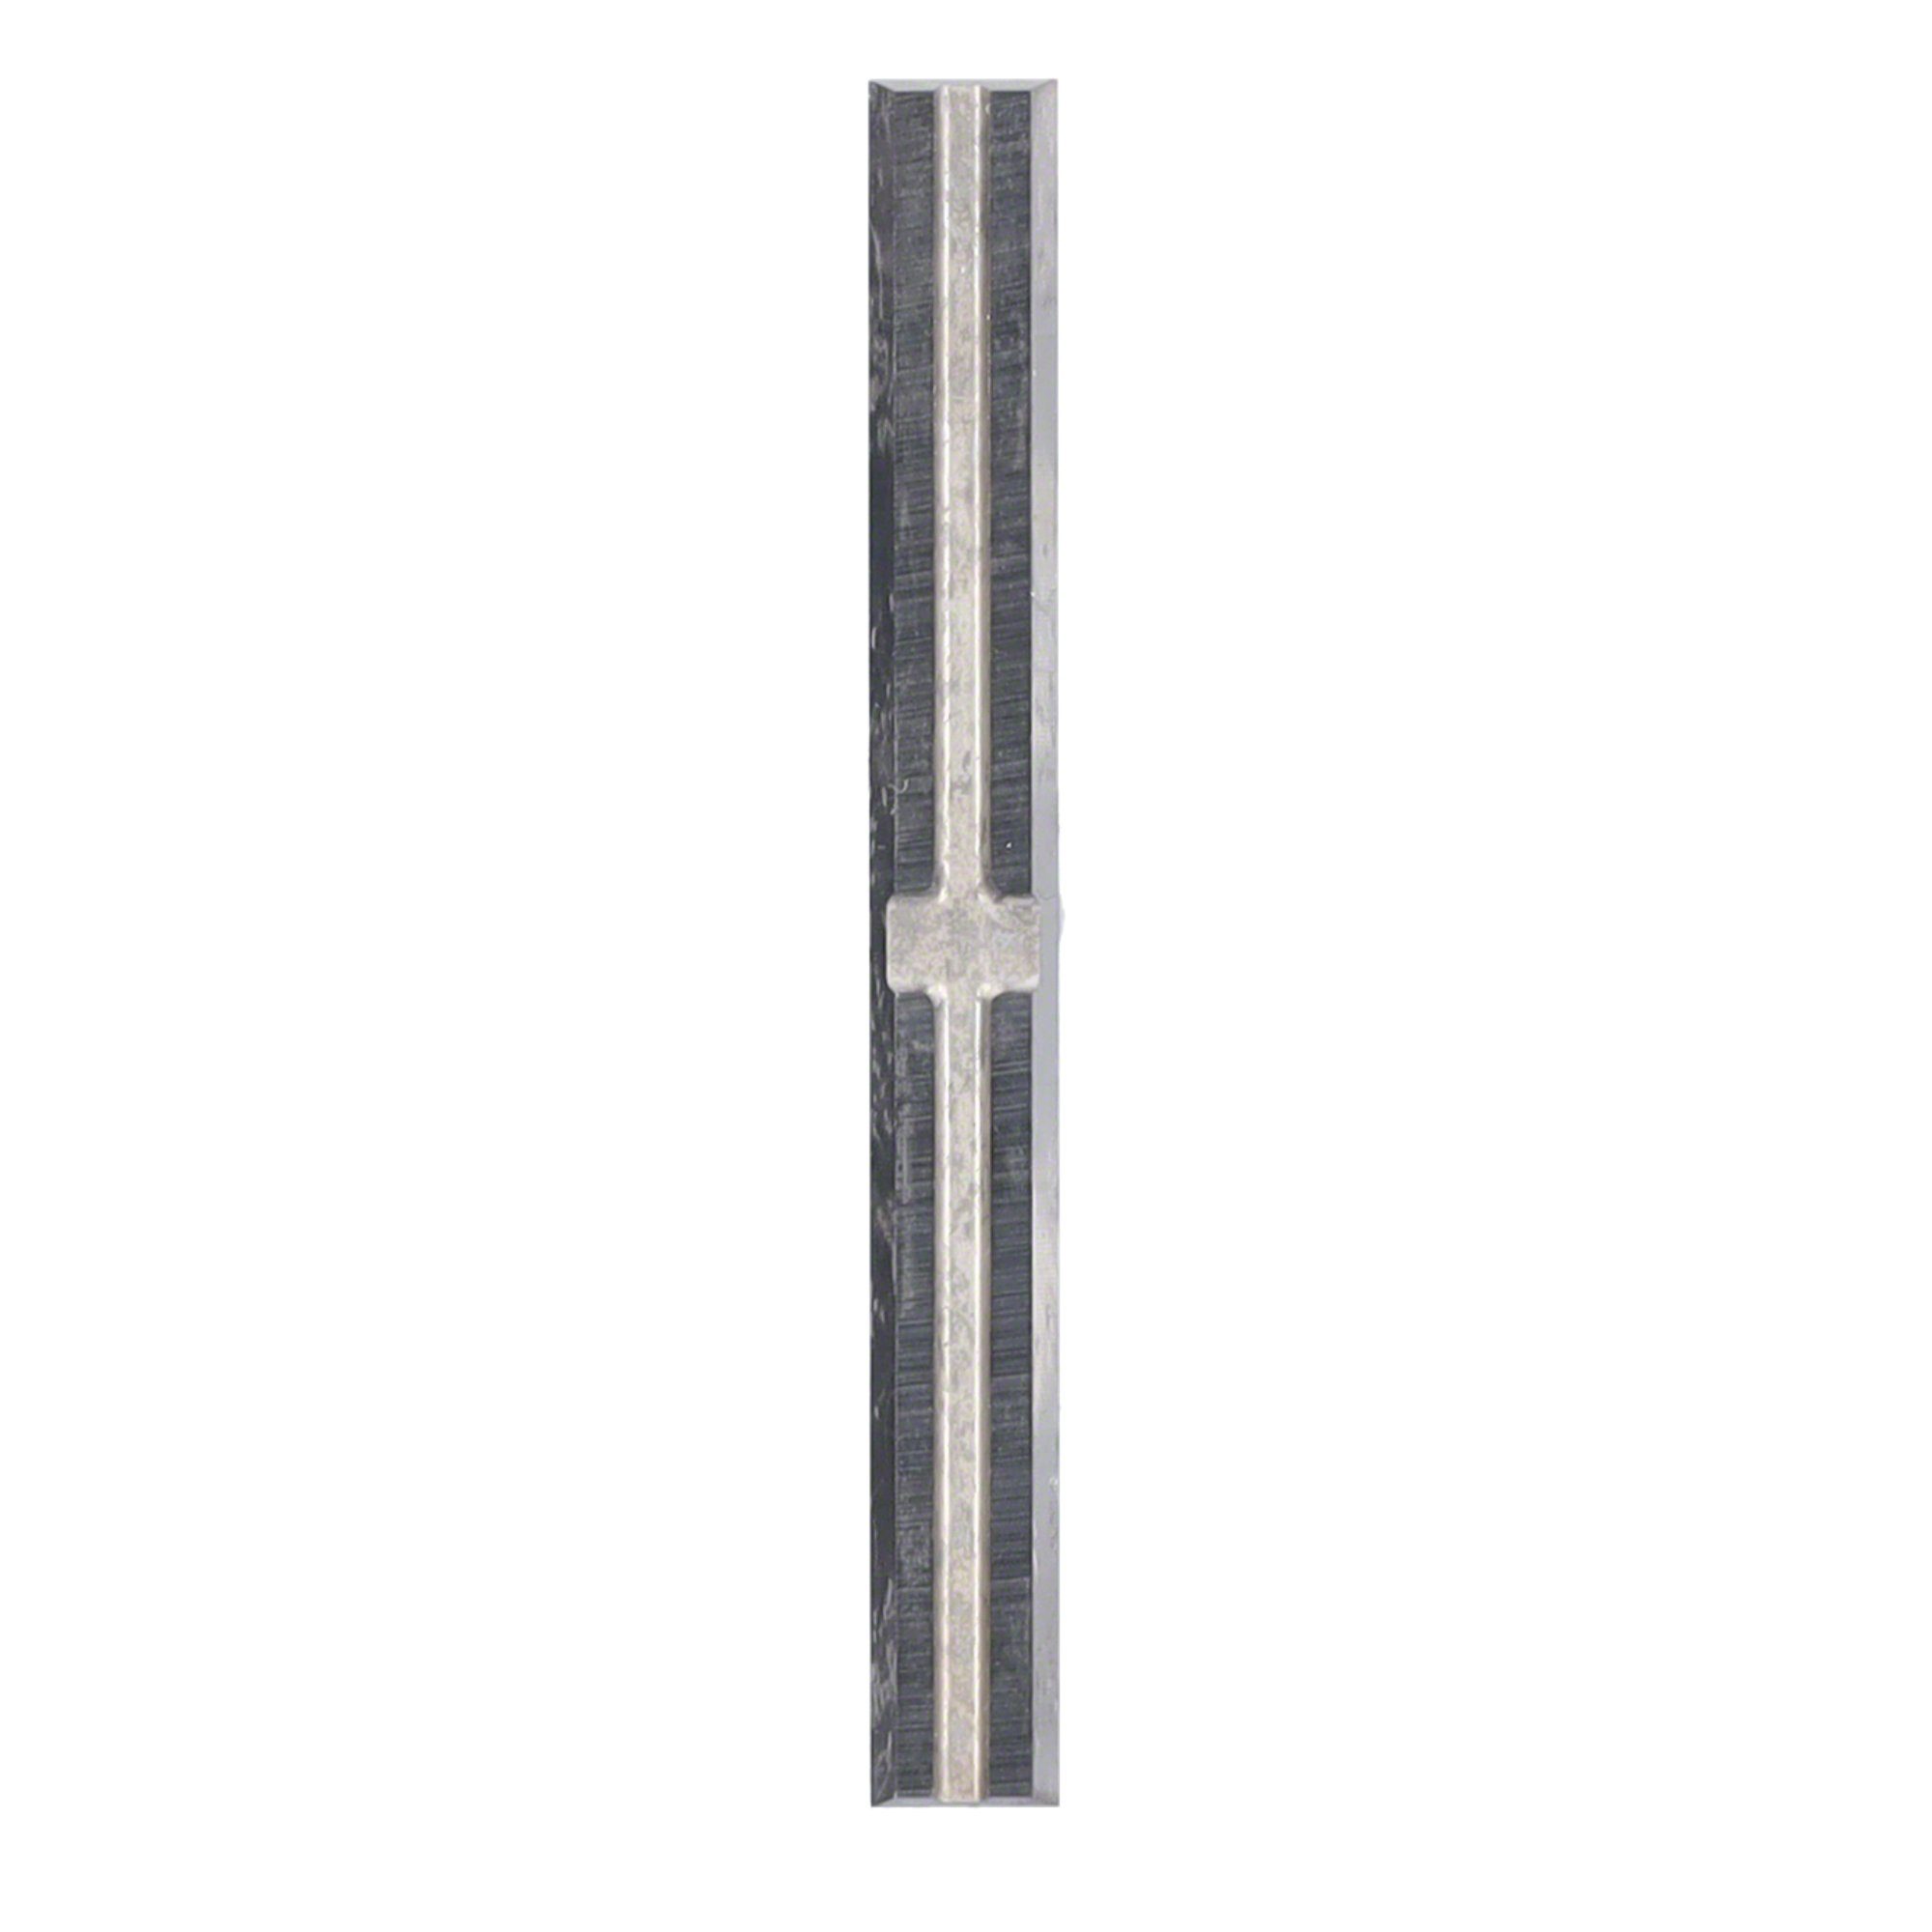 Tigra Wendeplattenfräser Mini-Wendeplatte T03SMG - Brust 4 38 St. Quernut 50x5,5x1,1mm und